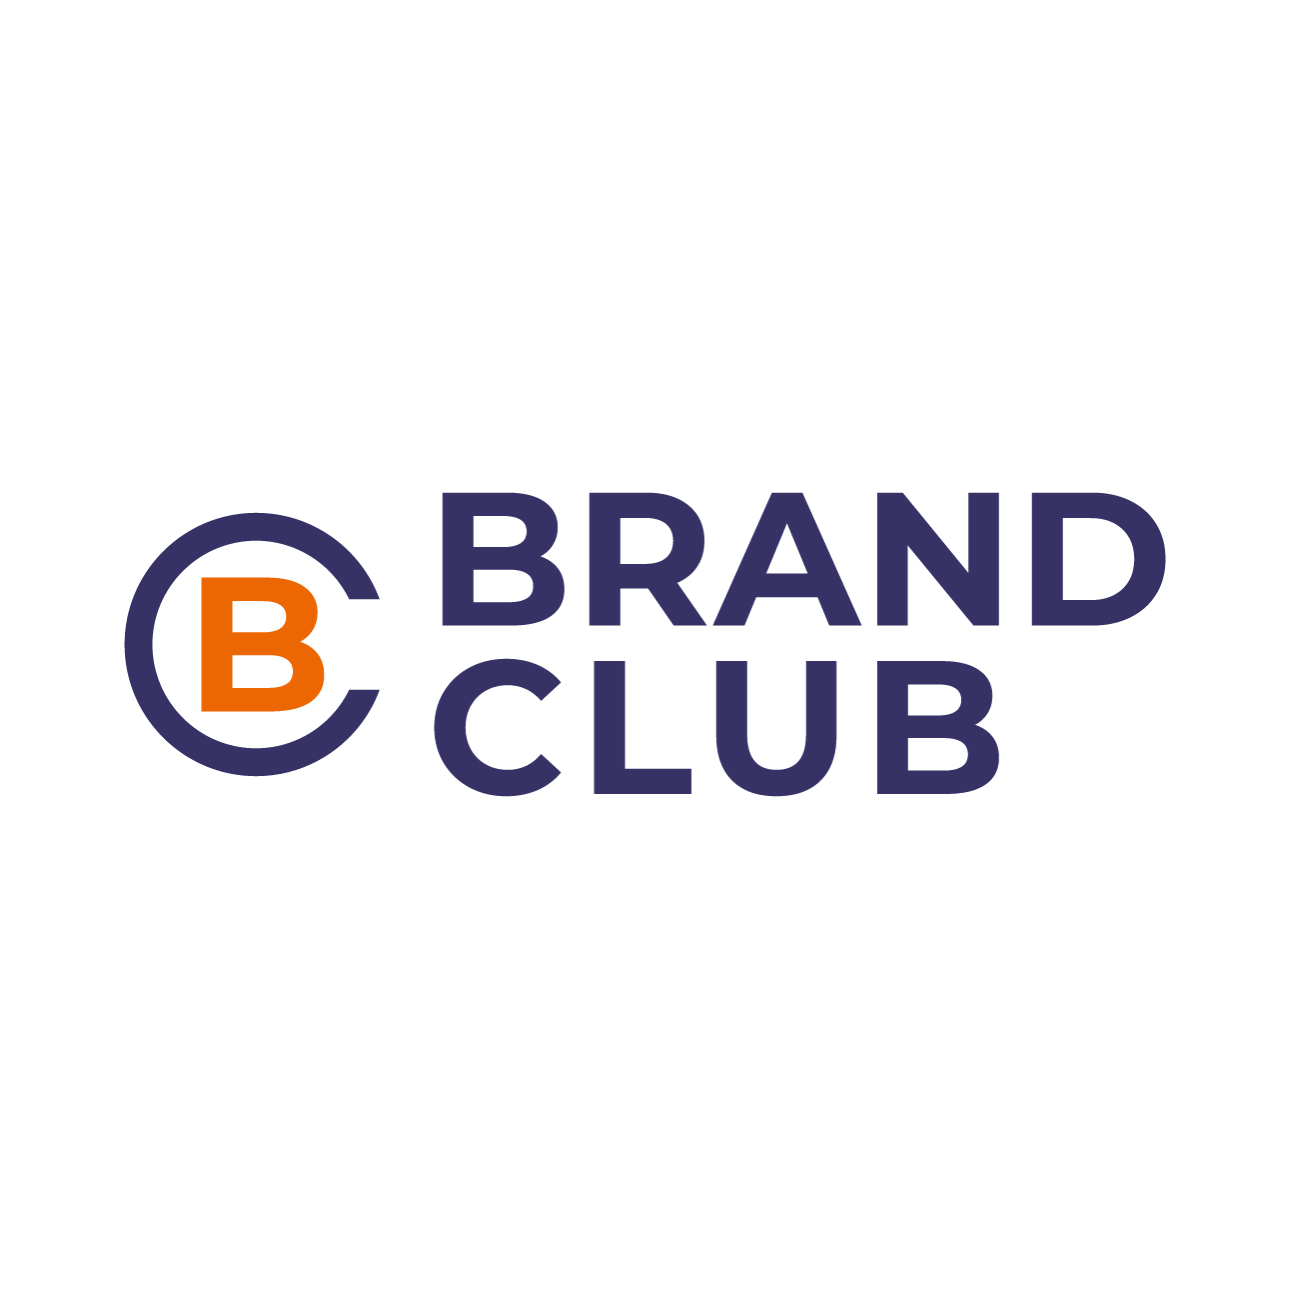 Brand Club